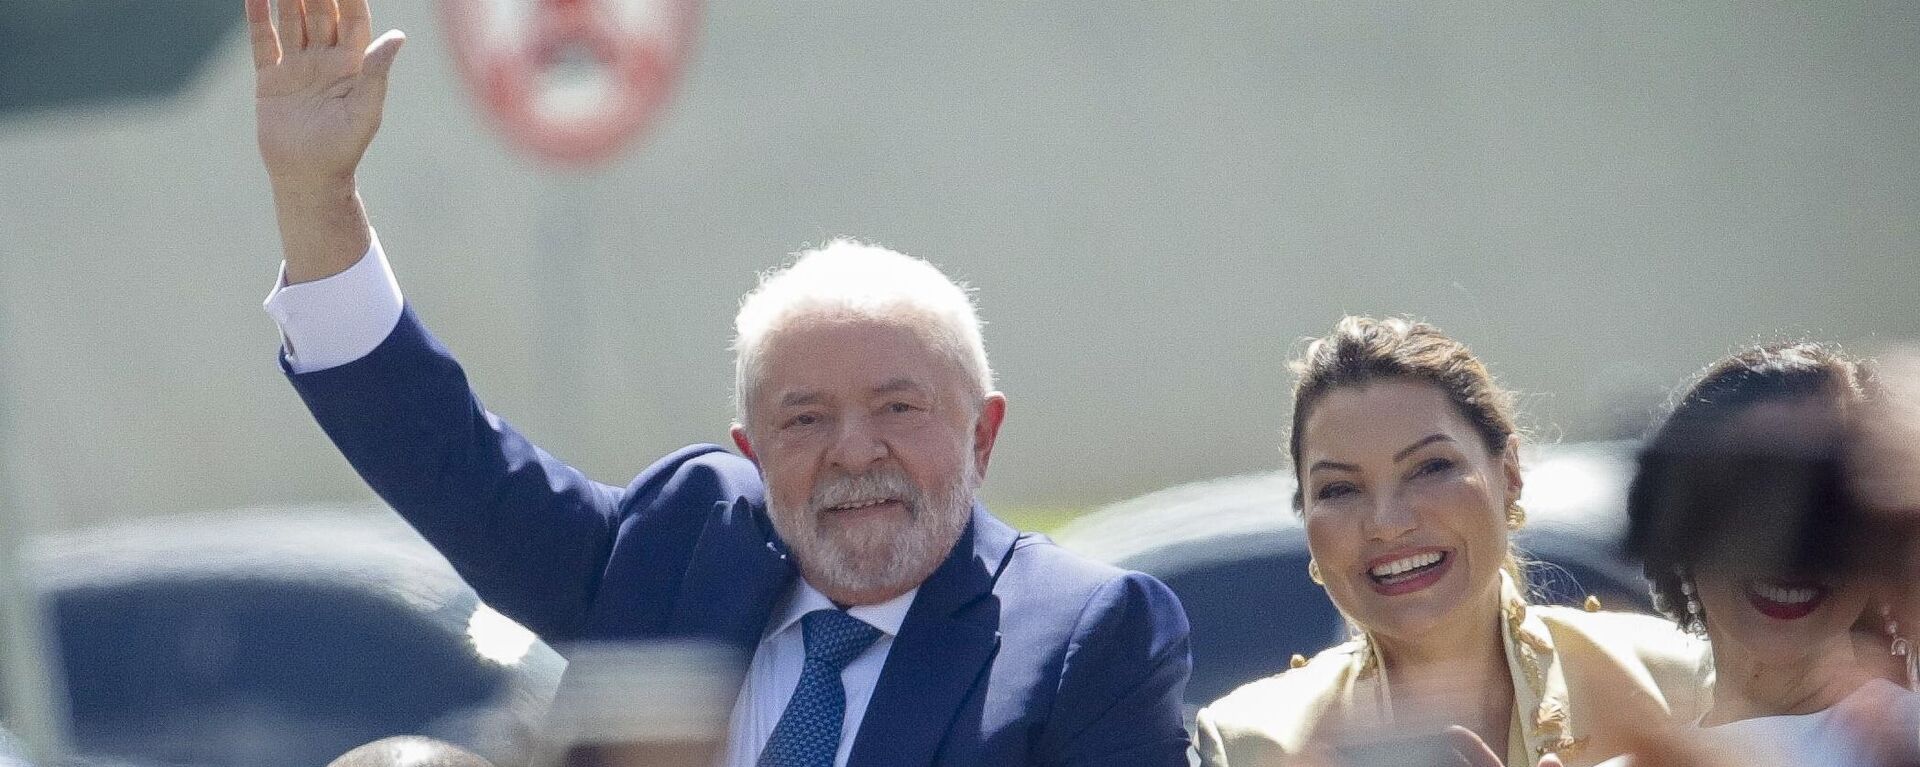 O presidente Luiz Inácio Lula da Silva (PT) acena após partir com sua esposa, Rosângela Silva, da Catedral Metropolitana para a cerimônia de posse no Congresso, em Brasília, no Brasil, em 1º de janeiro de 2023 (foto de arquivo) - Sputnik Brasil, 1920, 05.01.2023